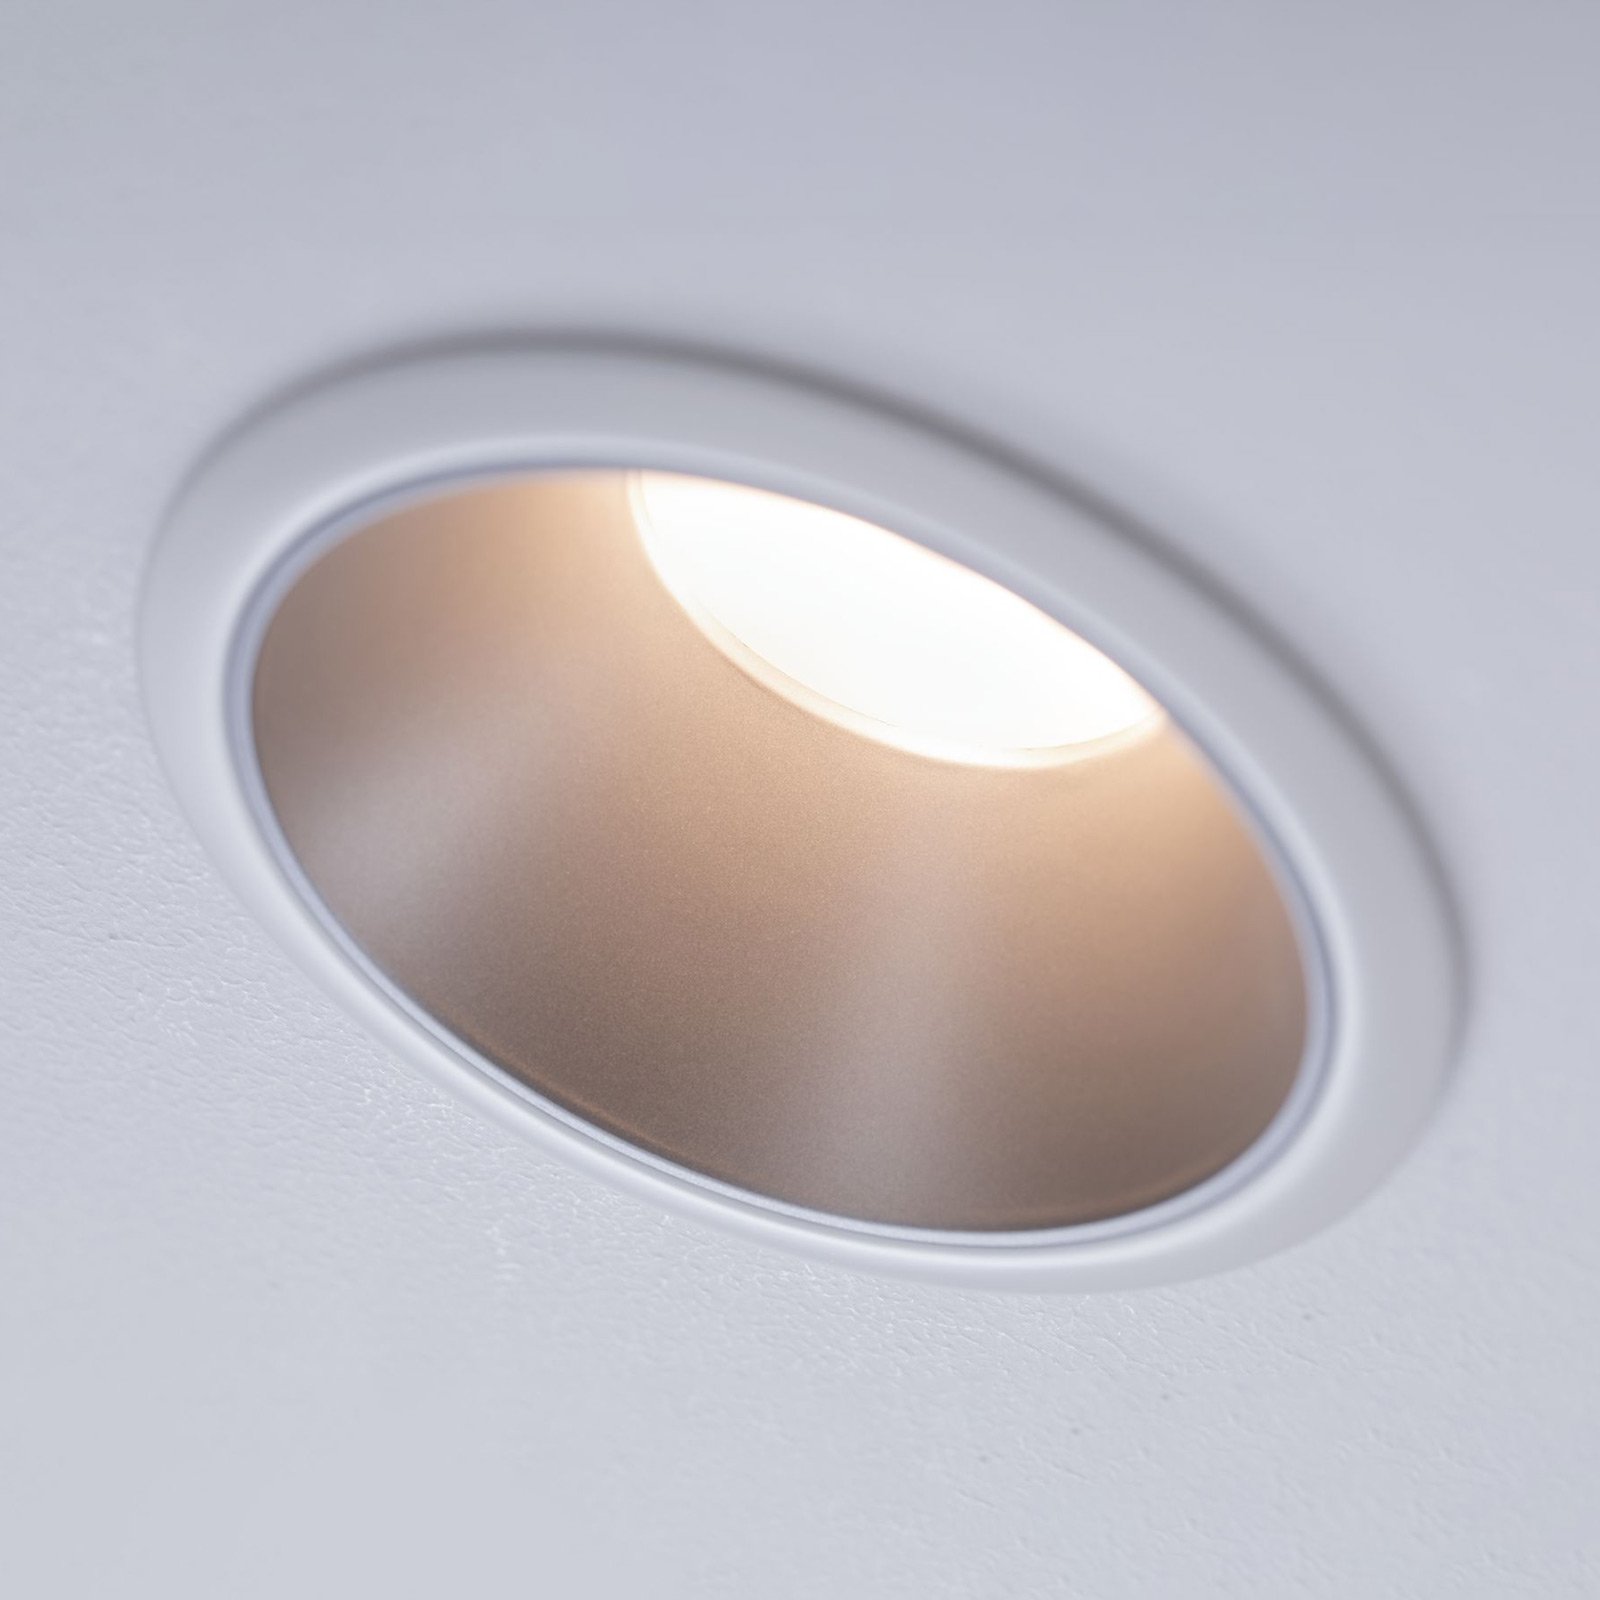 Paulmann Cole LED spotlight, stříbro-bílý, 3ks